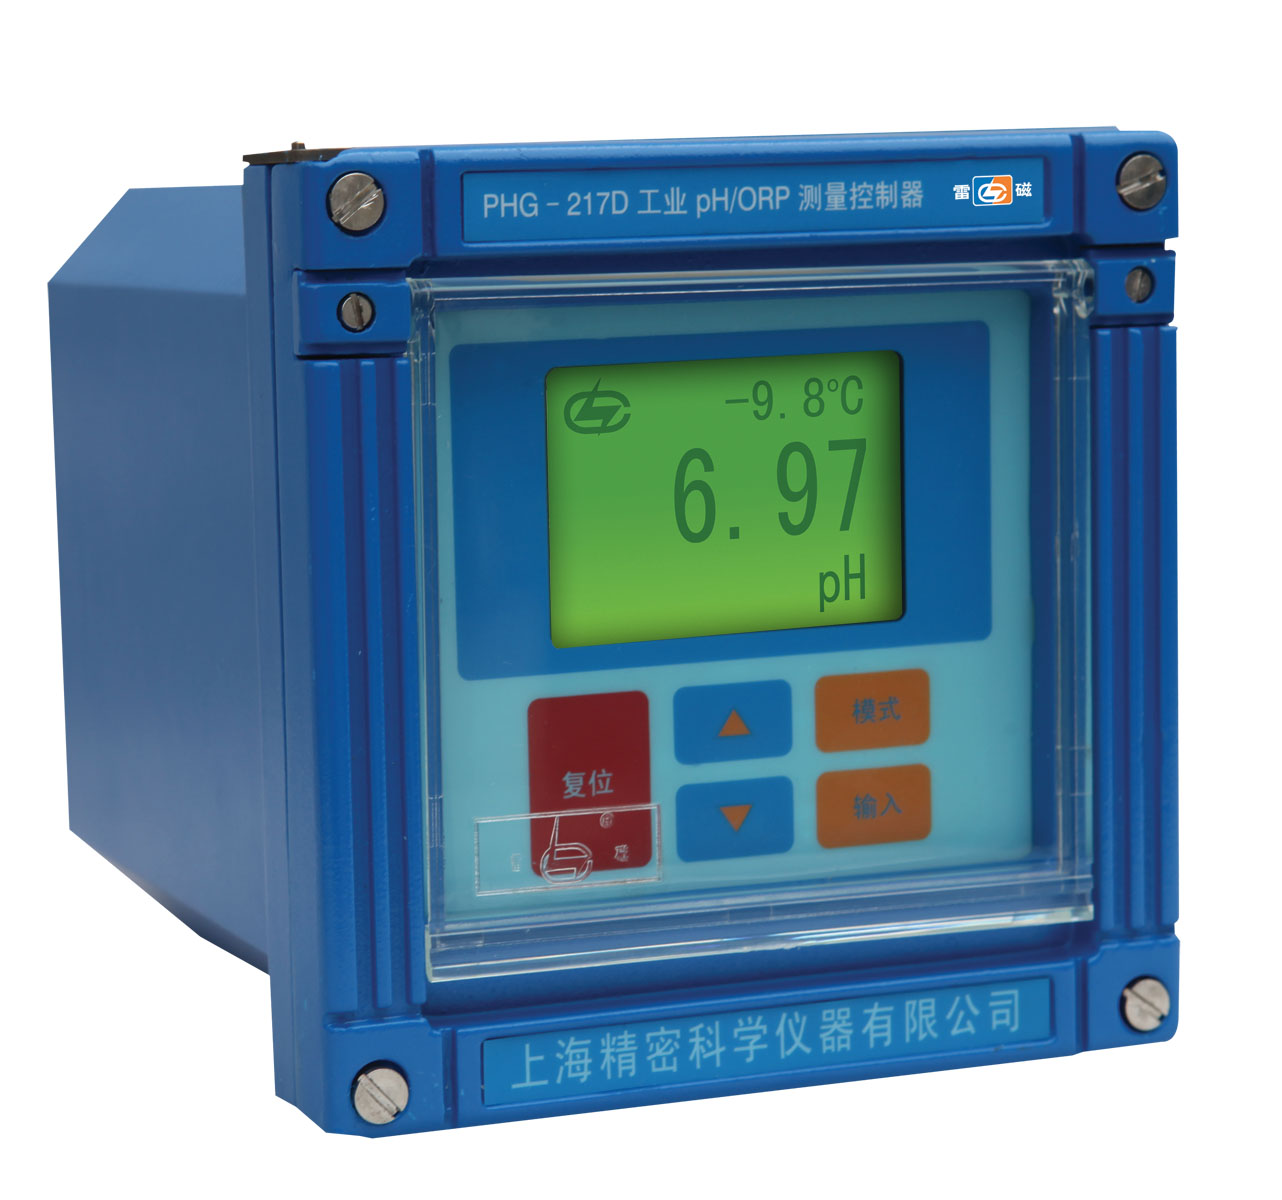 上海雷磁         工业pH/ORP测量控制器PHG-217D型